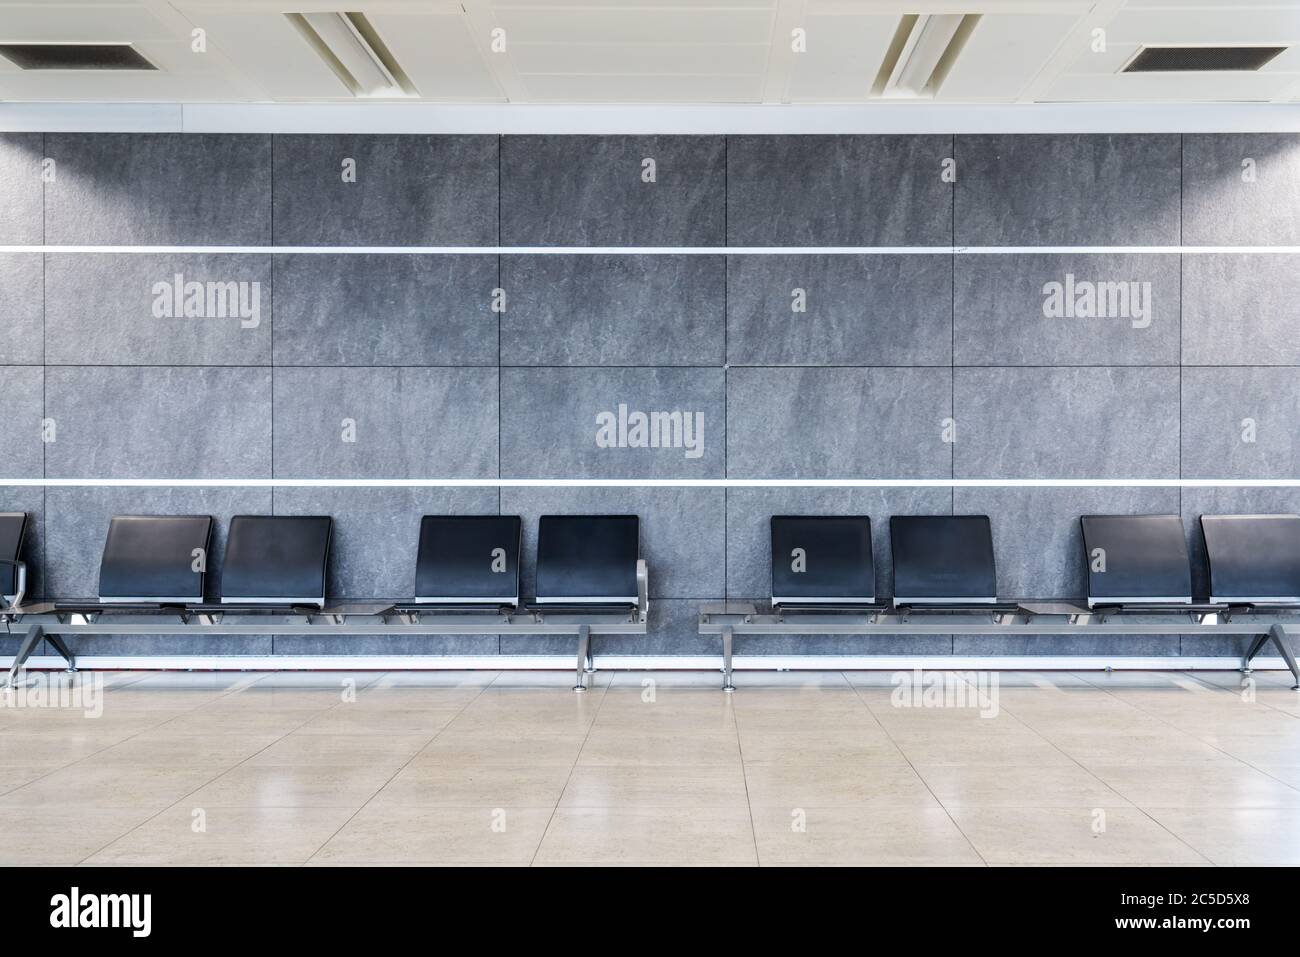 Un gruppo di posti a sedere in una sala d'attesa pulita e arredata in modo piacevole al terminal, all'aeroporto, al centro commerciale o all'ospedale. Foto di alta qualità Foto Stock